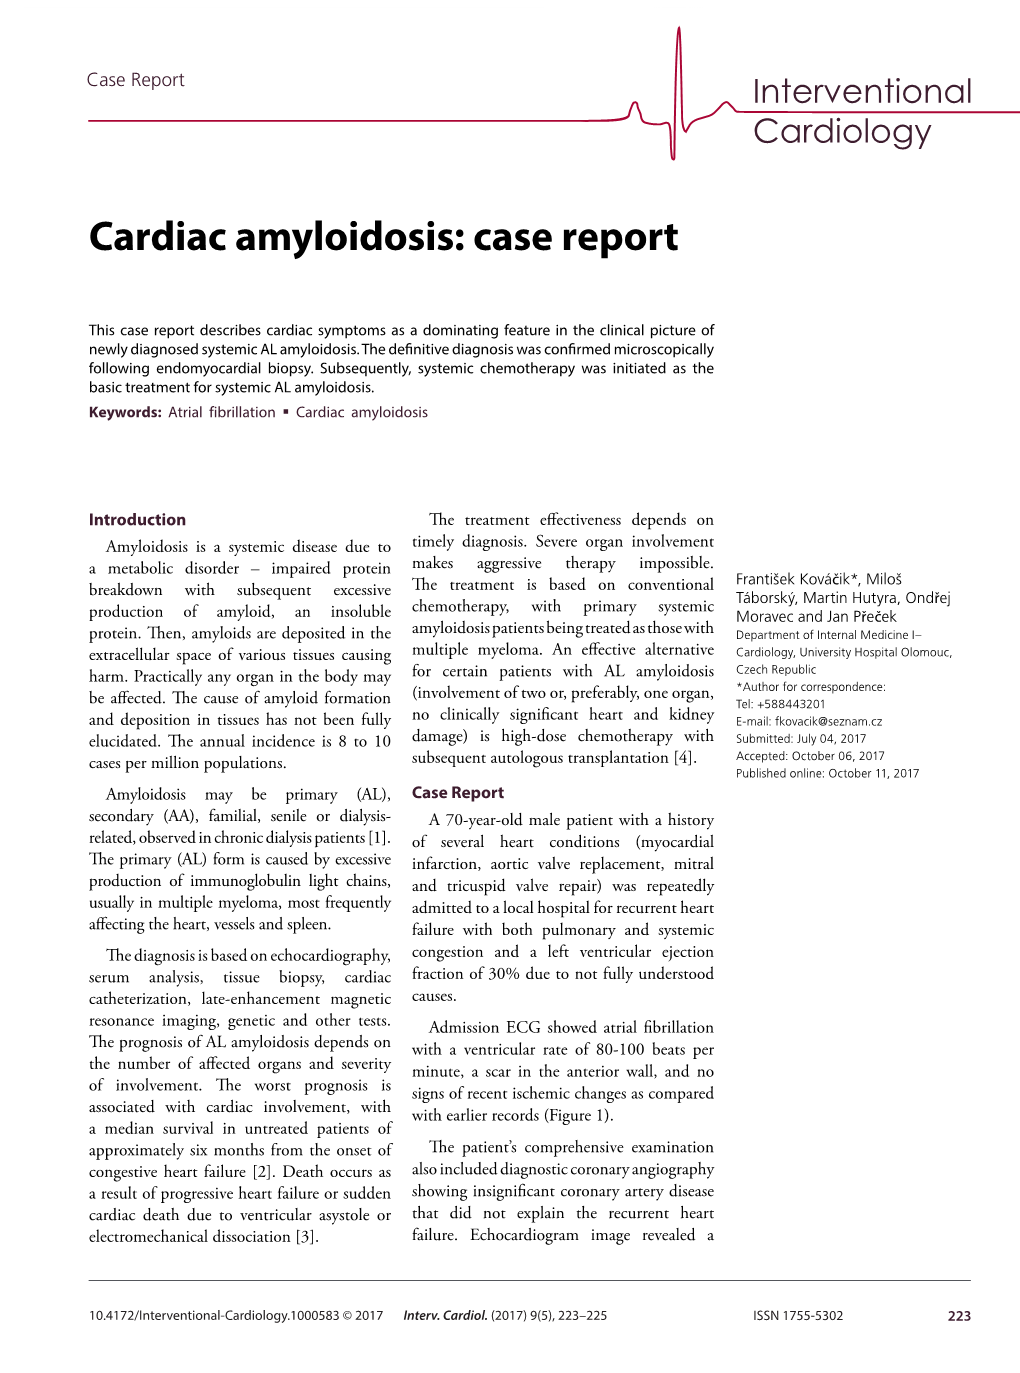 Cardiac Amyloidosis: Case Report